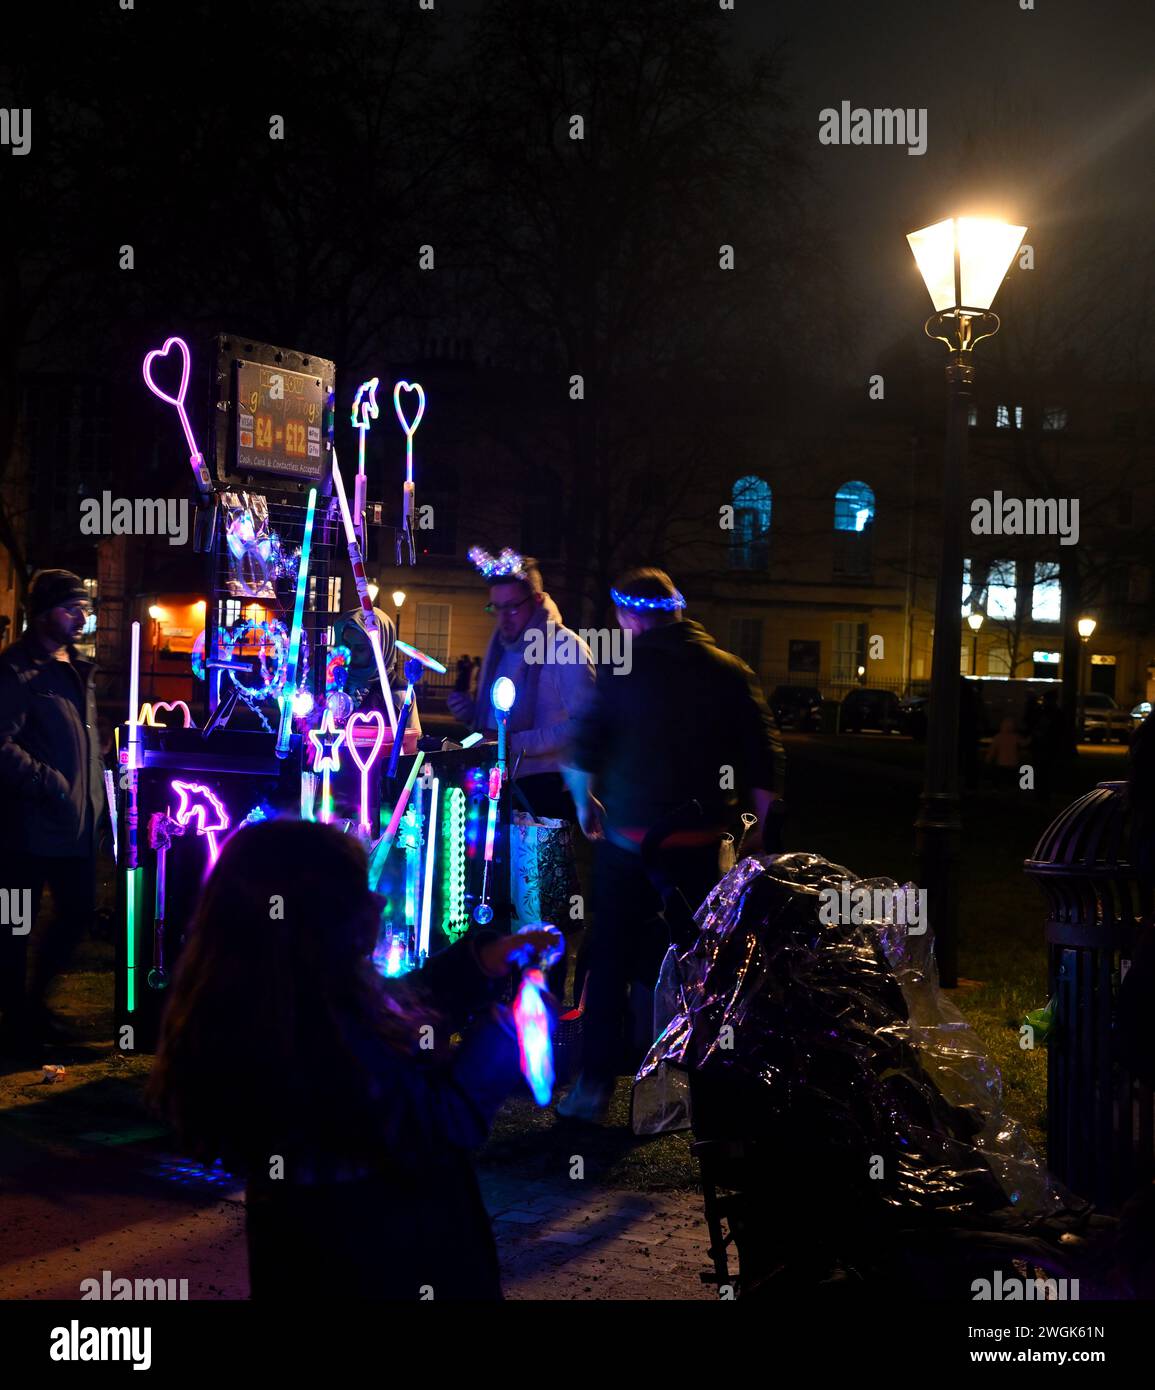 Vendedor callejero nocturno que vende variedad de palos de luz led Foto de stock